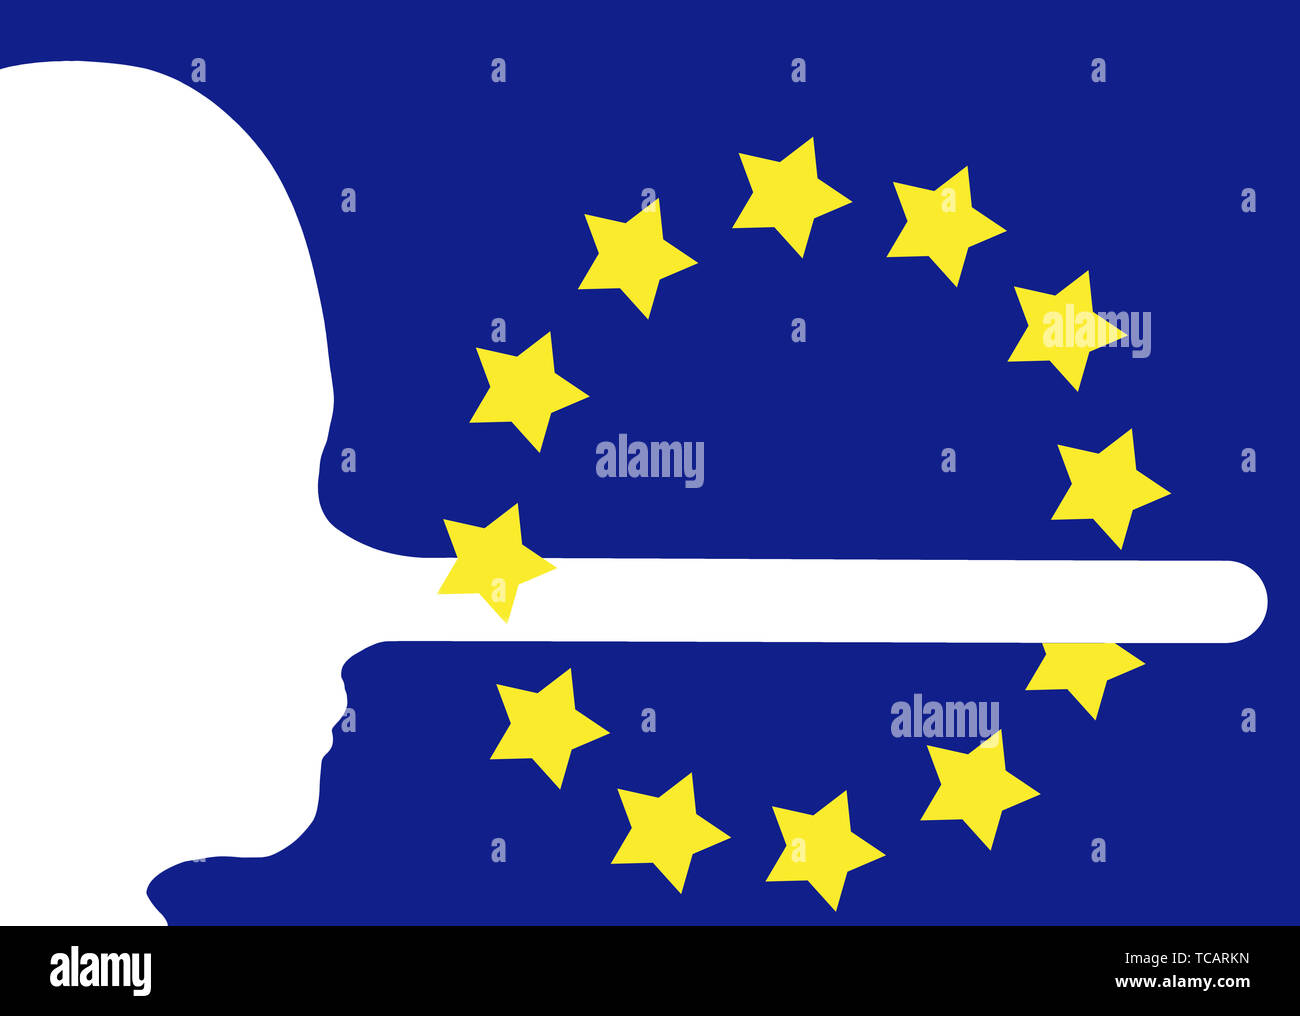 EU, Europa oder Referendum etc. Liegt, gefälschte Nachrichten Konzept. Gesicht im Profil mit langer Nase, Fibs. Medien desinformation etc. Stockfoto